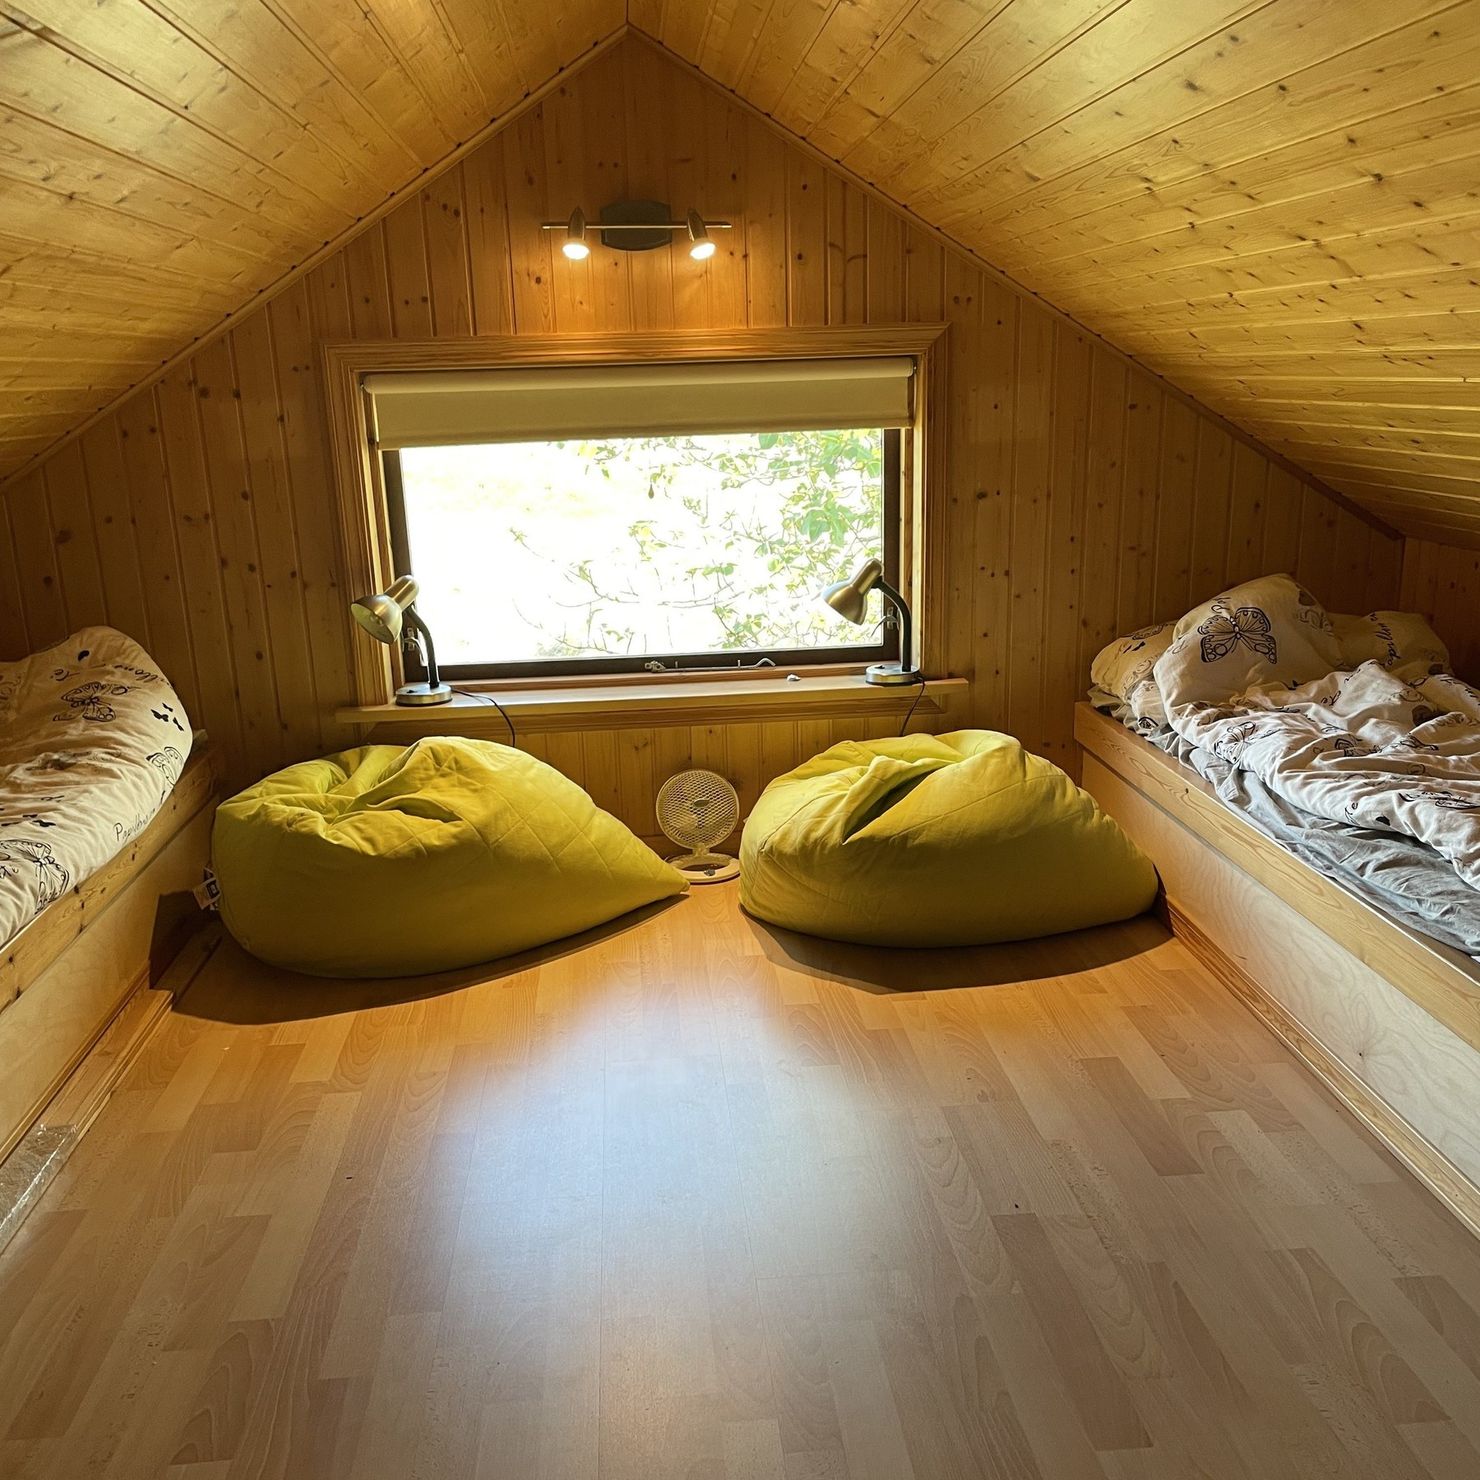 Perfekt für den Nachwuchs. Ausgebautes Dachgeschoss mit 2 Betten und gemütlichen Sitzsäcken